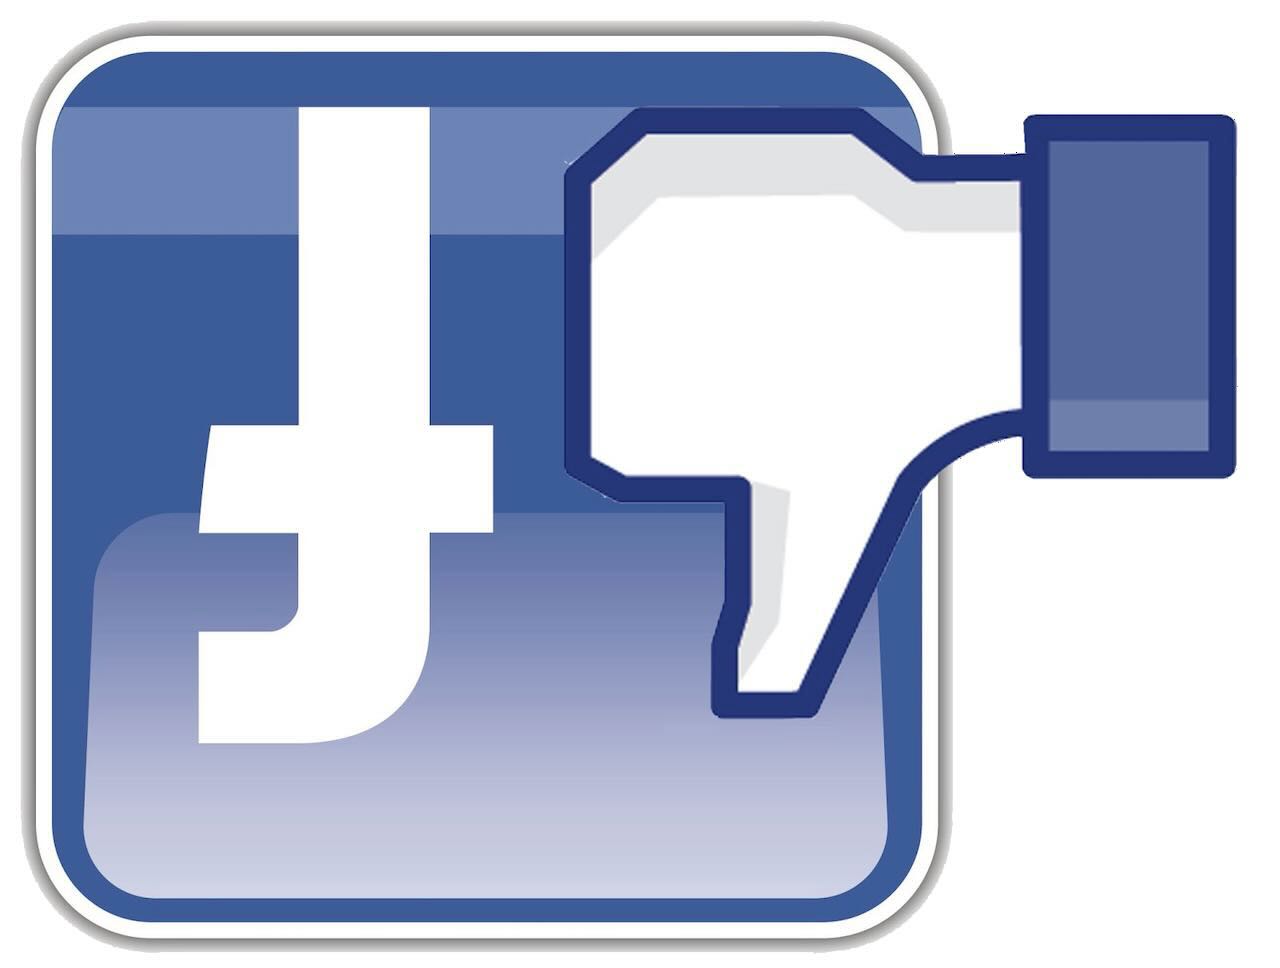 Facebook-logo-png-2-rovesciato.jpeg